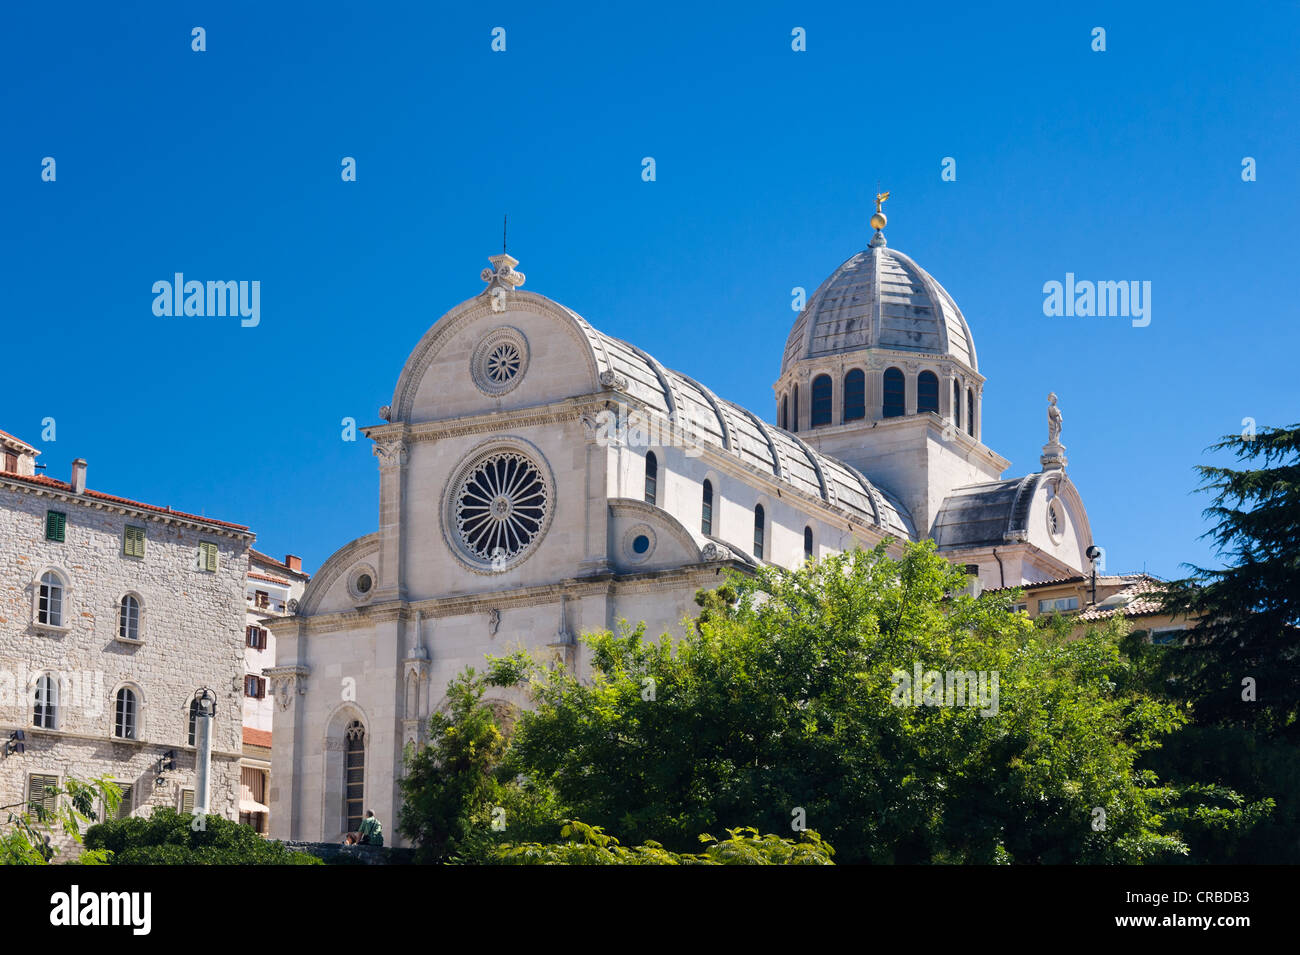 Cathédrale de Sveti Jakov, Cathédrale de Saint James, Sibenik, Dalmatie, Croatie, Europe Banque D'Images